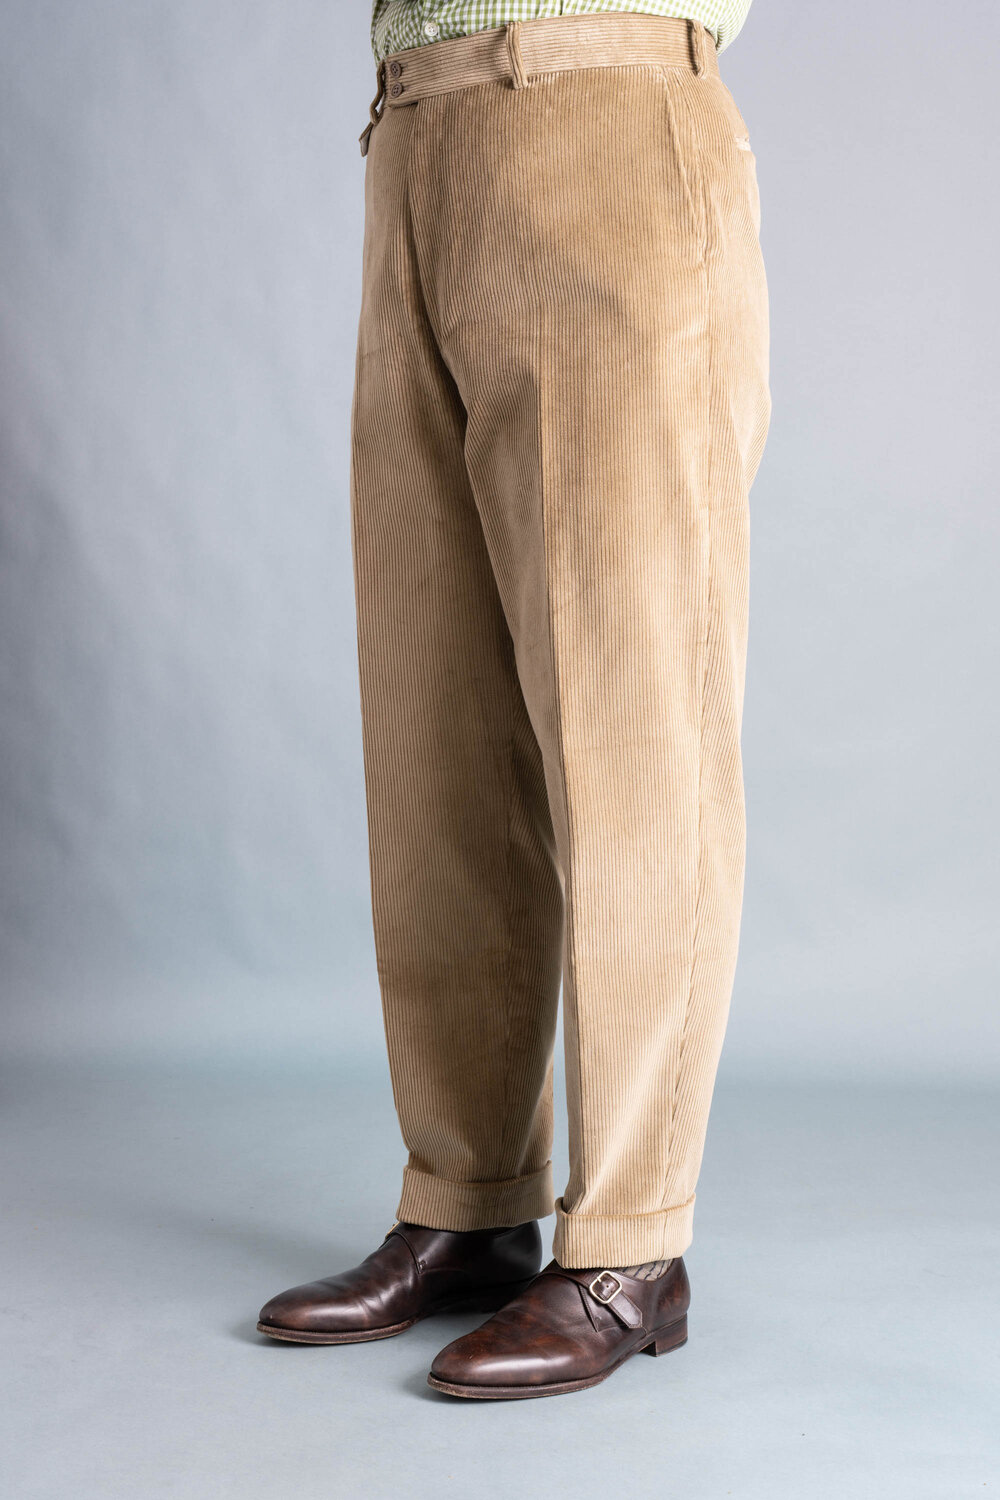 Gender Neutral Brown Corduroy Wide Leg Pants Unisex Brown - Etsy | Corduroy  pants outfit, Gender neutral outfit, Wide leg pants